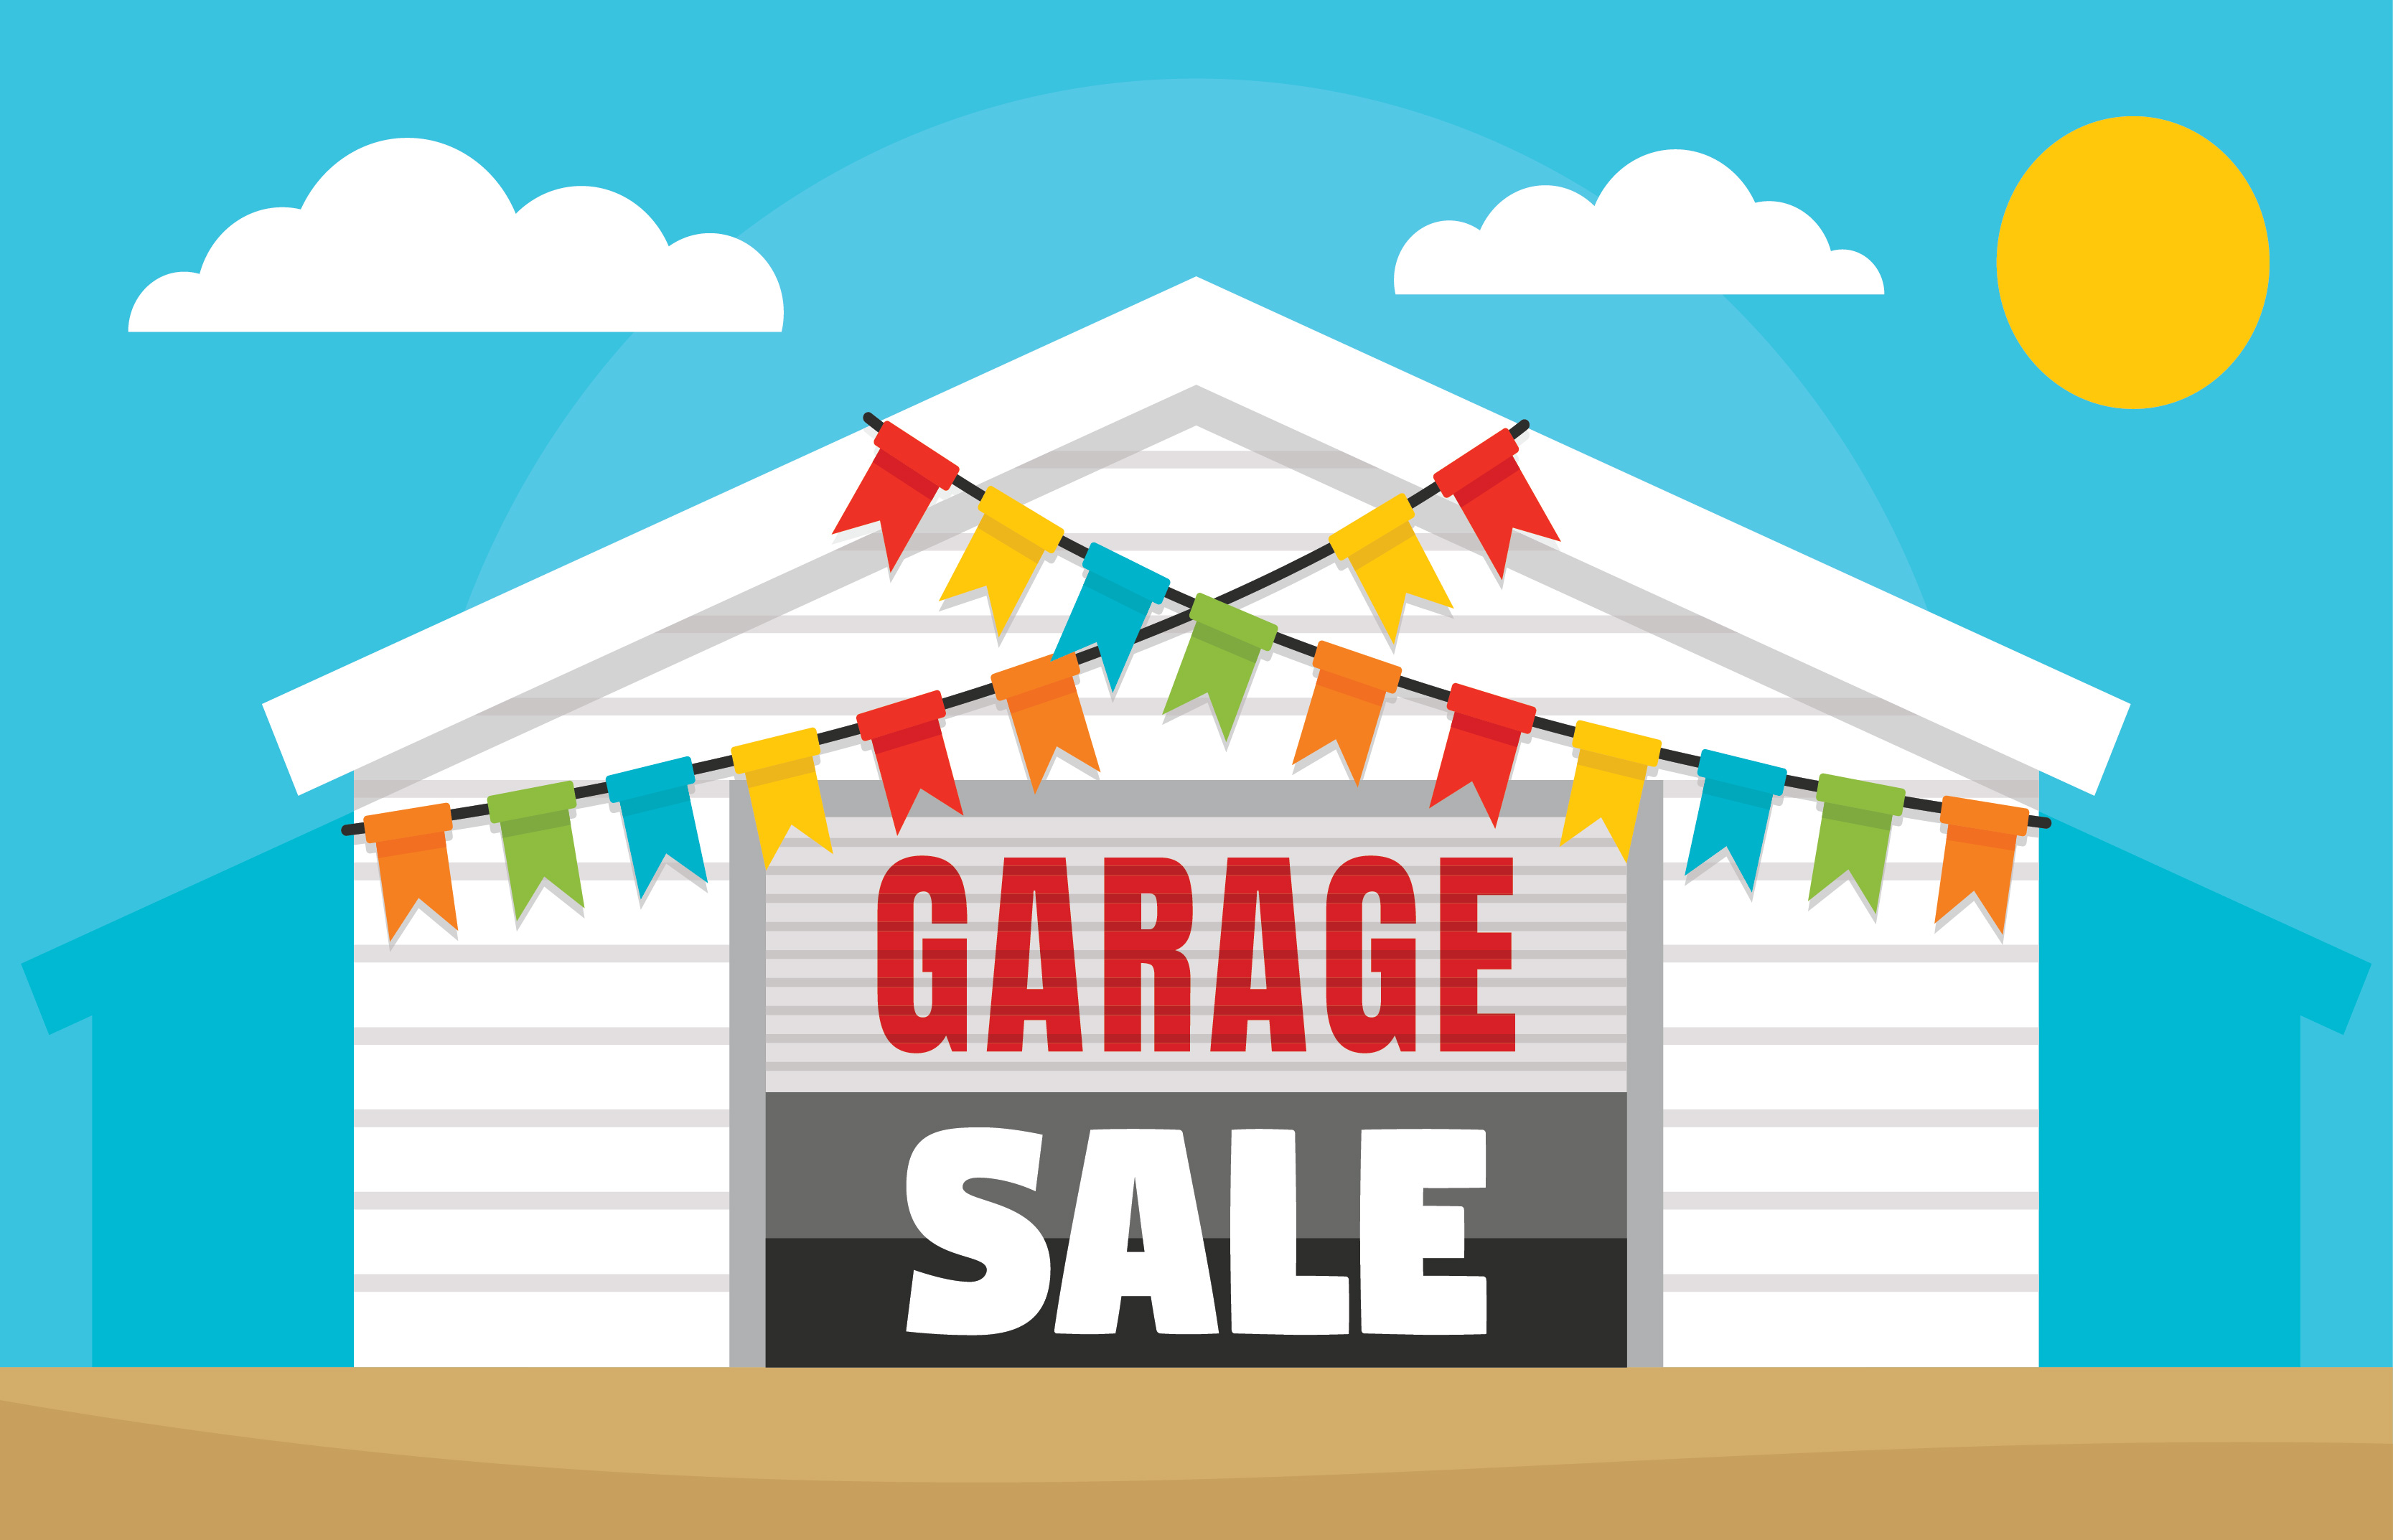 Copperbrook Garage Sale Set for October 7